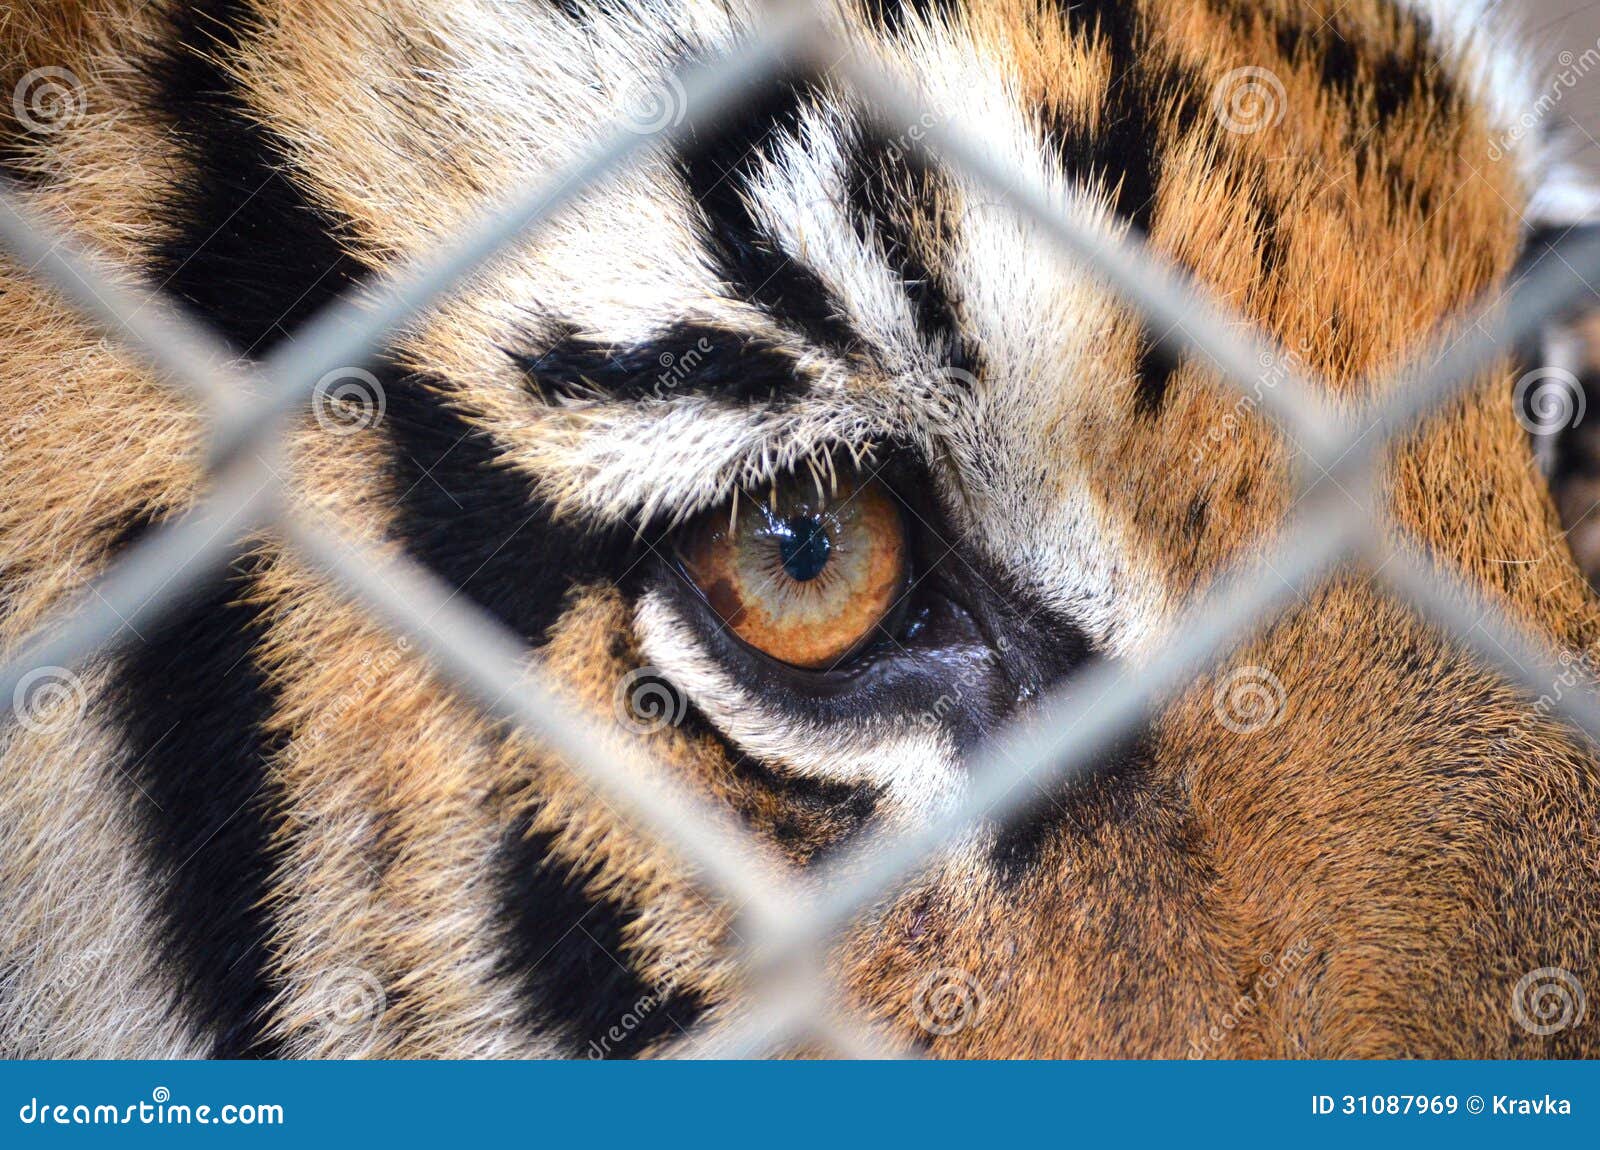 Глаза тигра Изображения – скачать бесплатно на Freepik